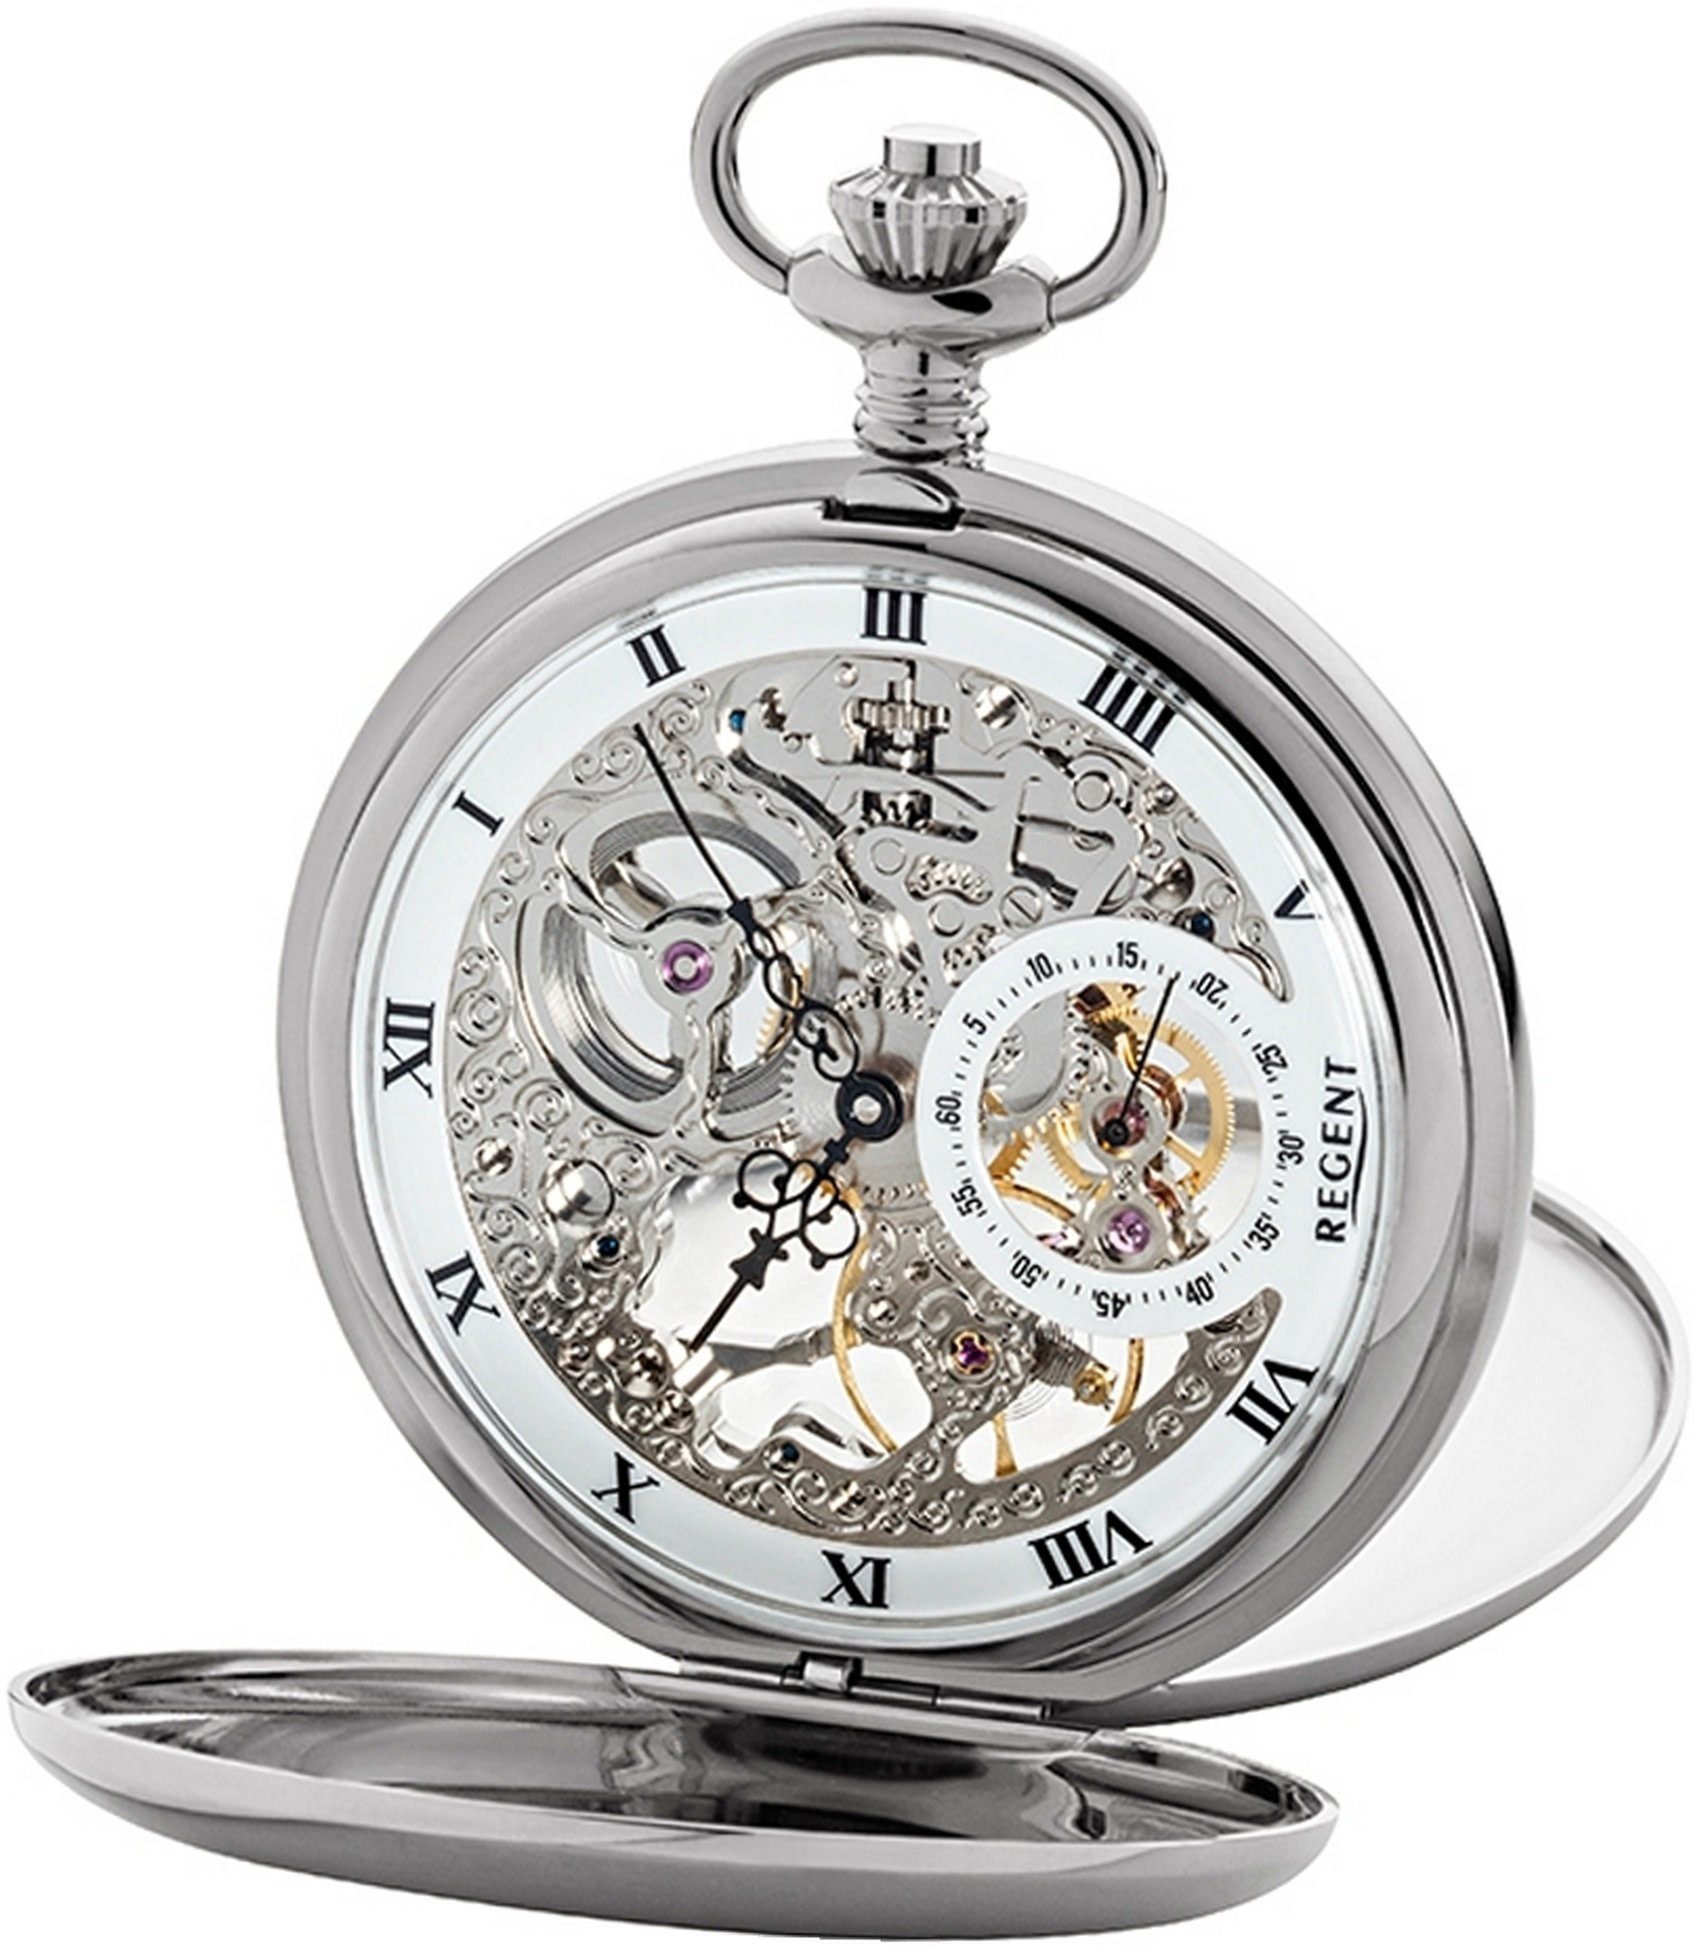 Regent Taschenuhr Regent Herren Uhr GM1611 Armbanduhr, (Analoguhr), Herrenuhr, rundes Gehäuse, groß (ca. 53mm), weiß